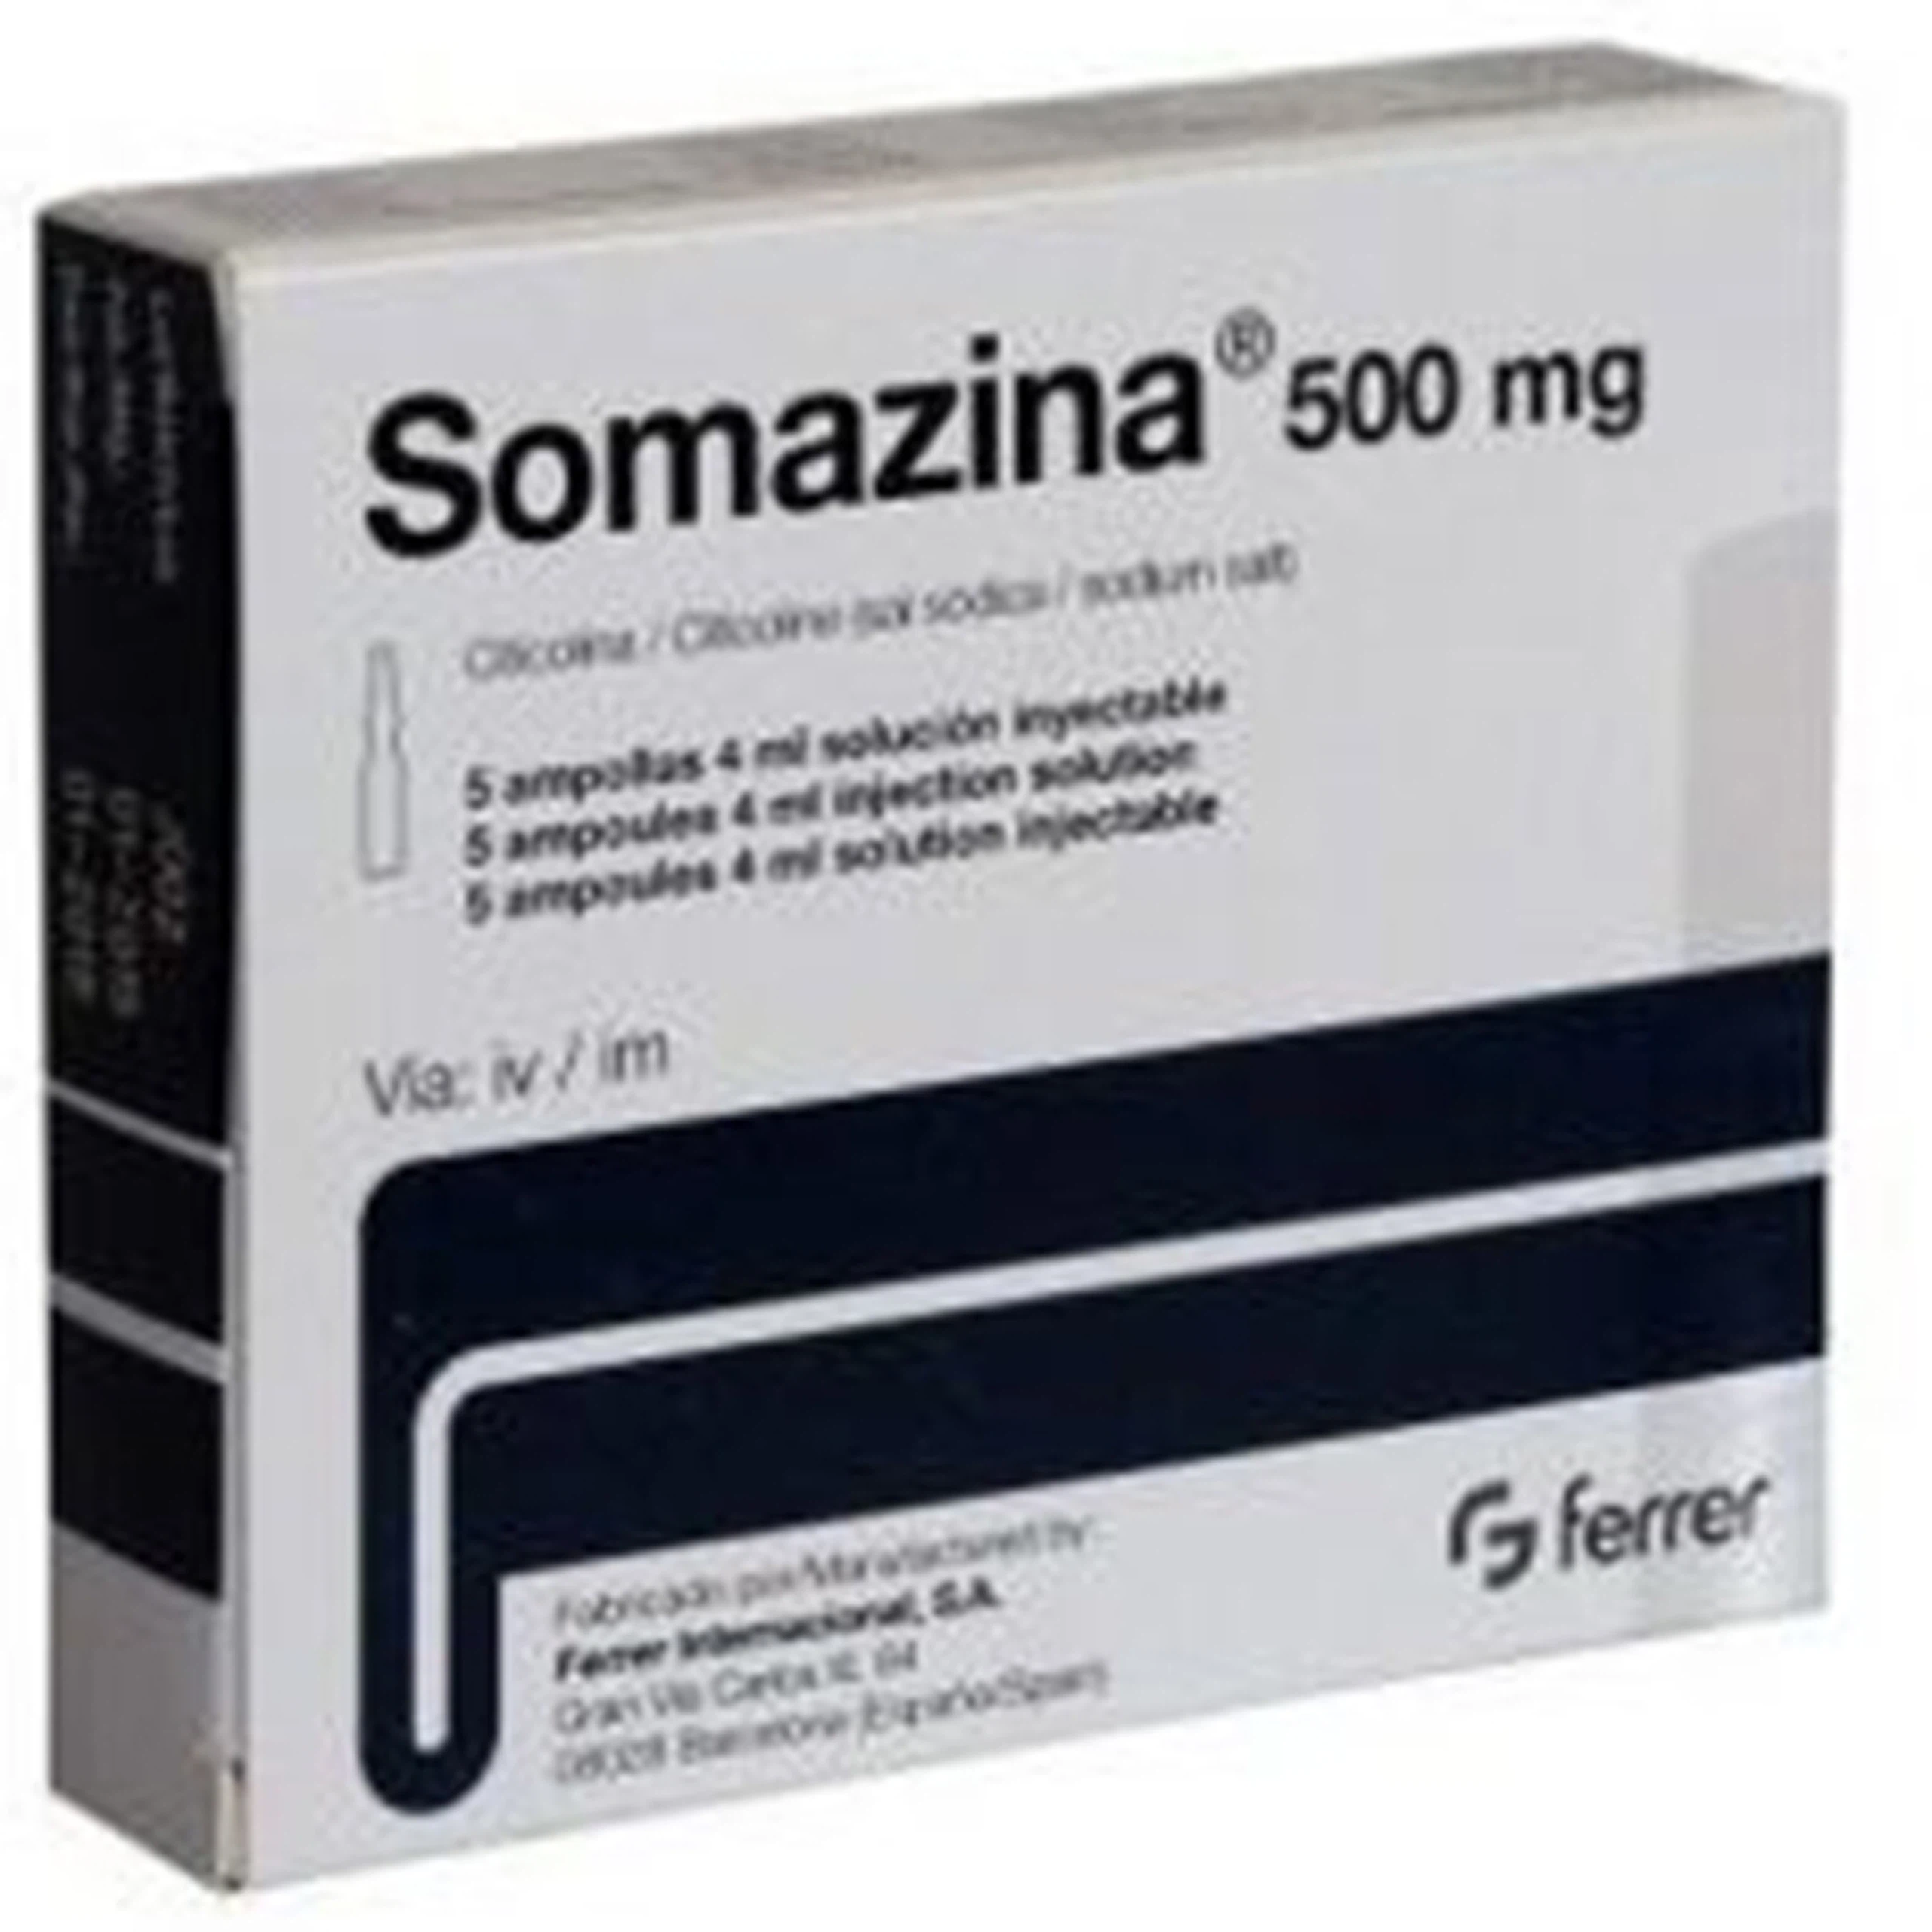 Dung dịch Somazina 500mg Ferrer điều trị đột qụy cấp, di chứng thần kinh (5 ống x 4ml)